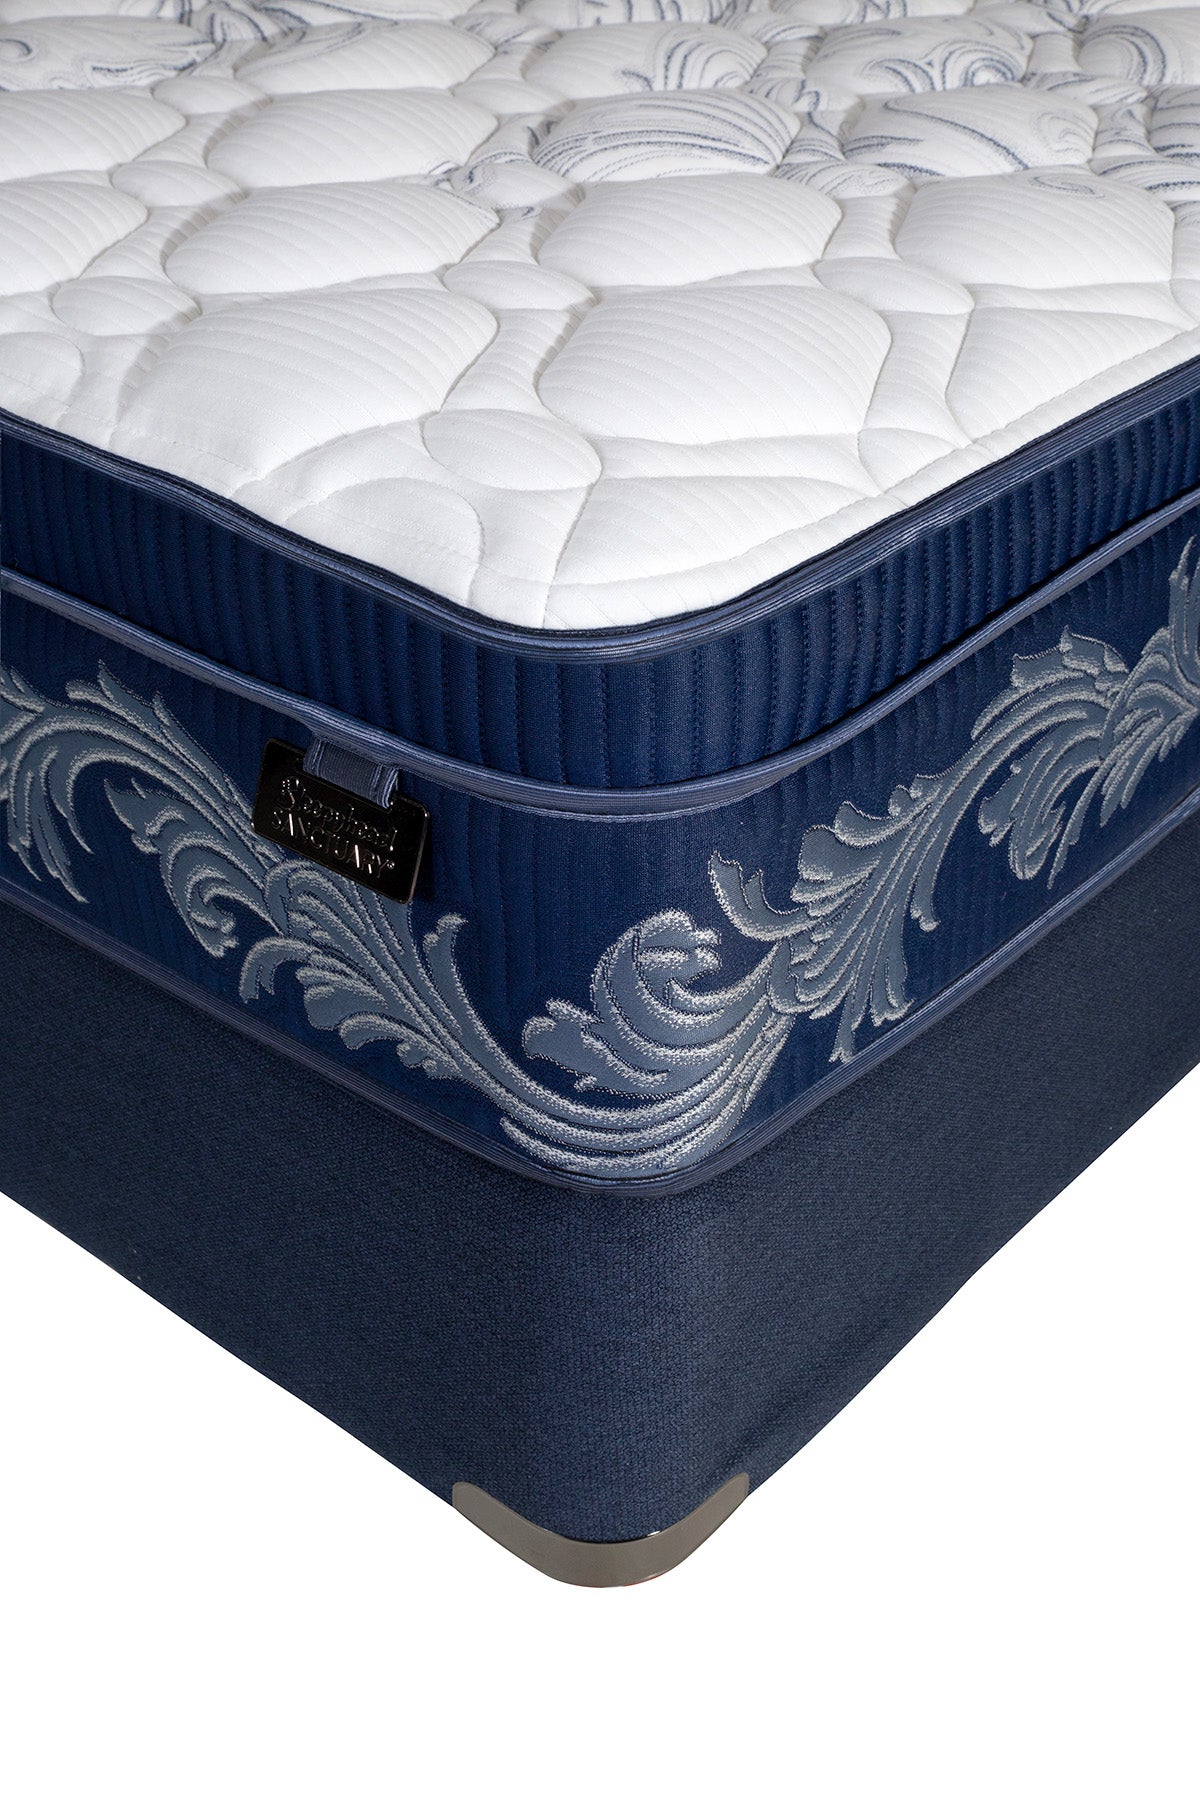 midnight5-queen-mattress-2